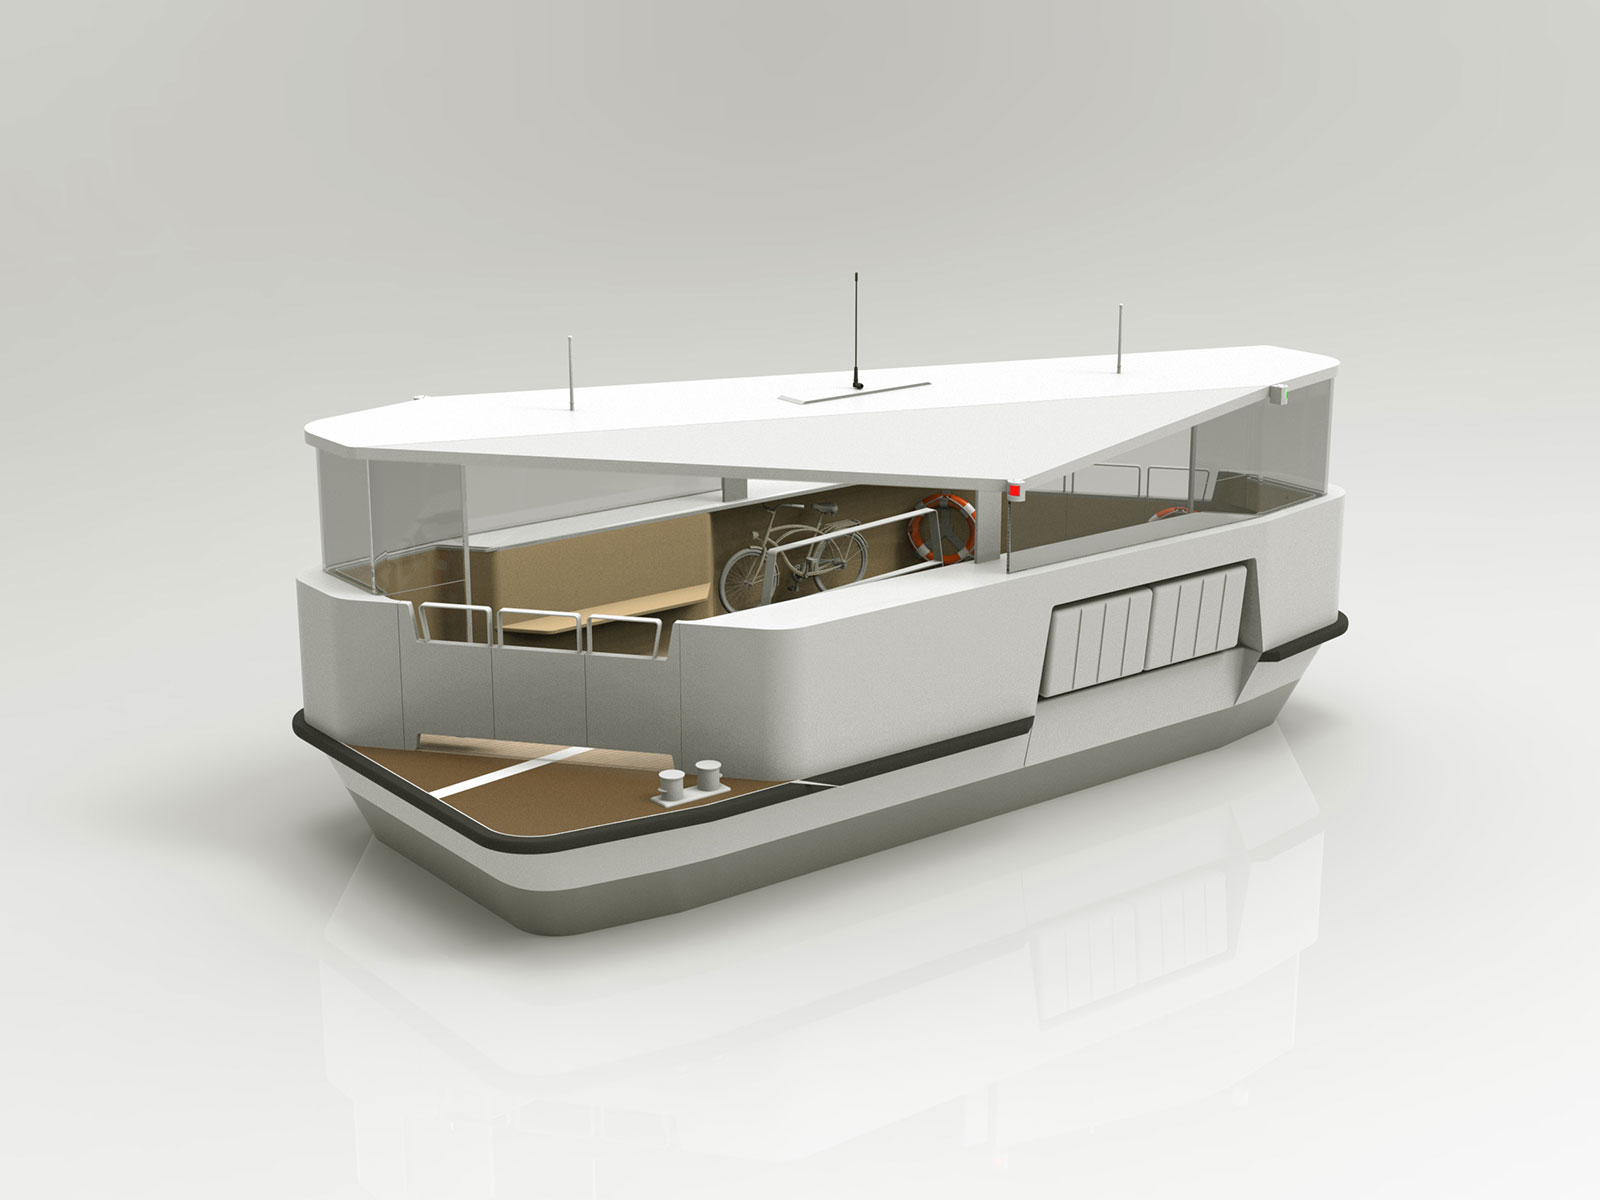 Tigullio Design District Sea Design Contest 2023, traghetto semi-autonomo